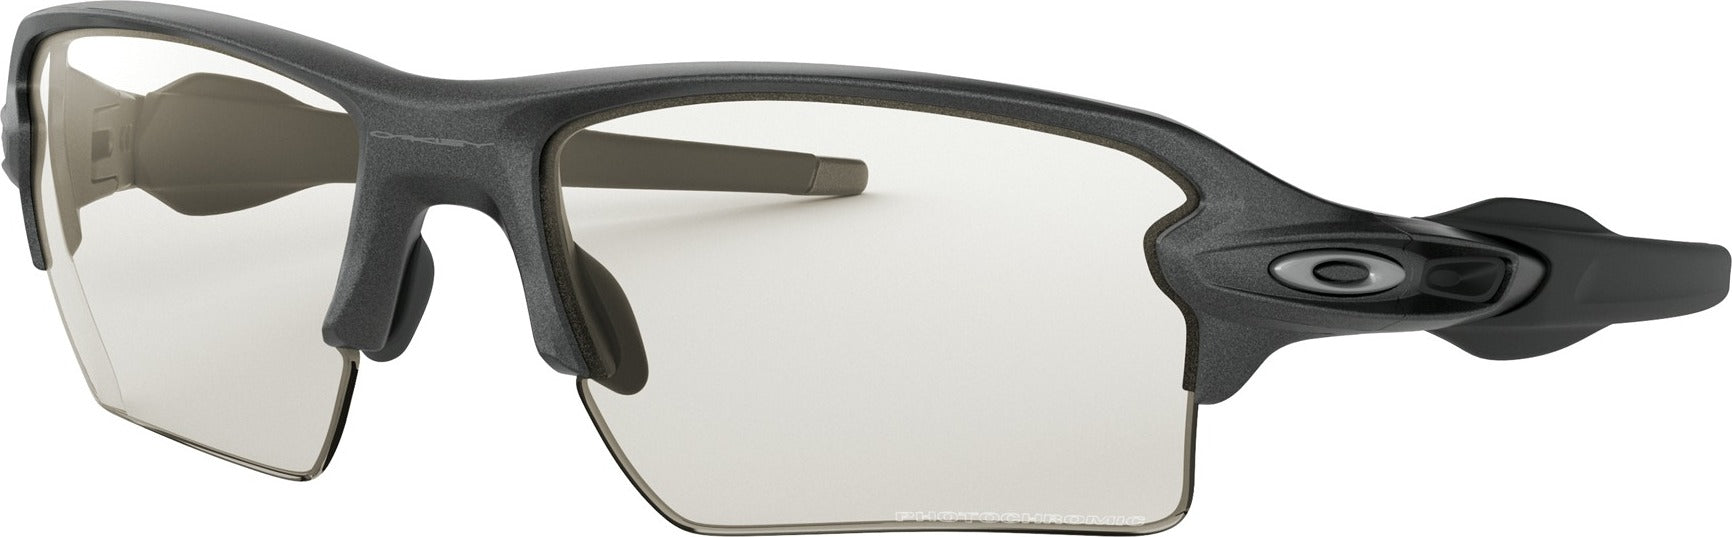 Oakley Flak 2.0 XL Sunglasses - Steel 